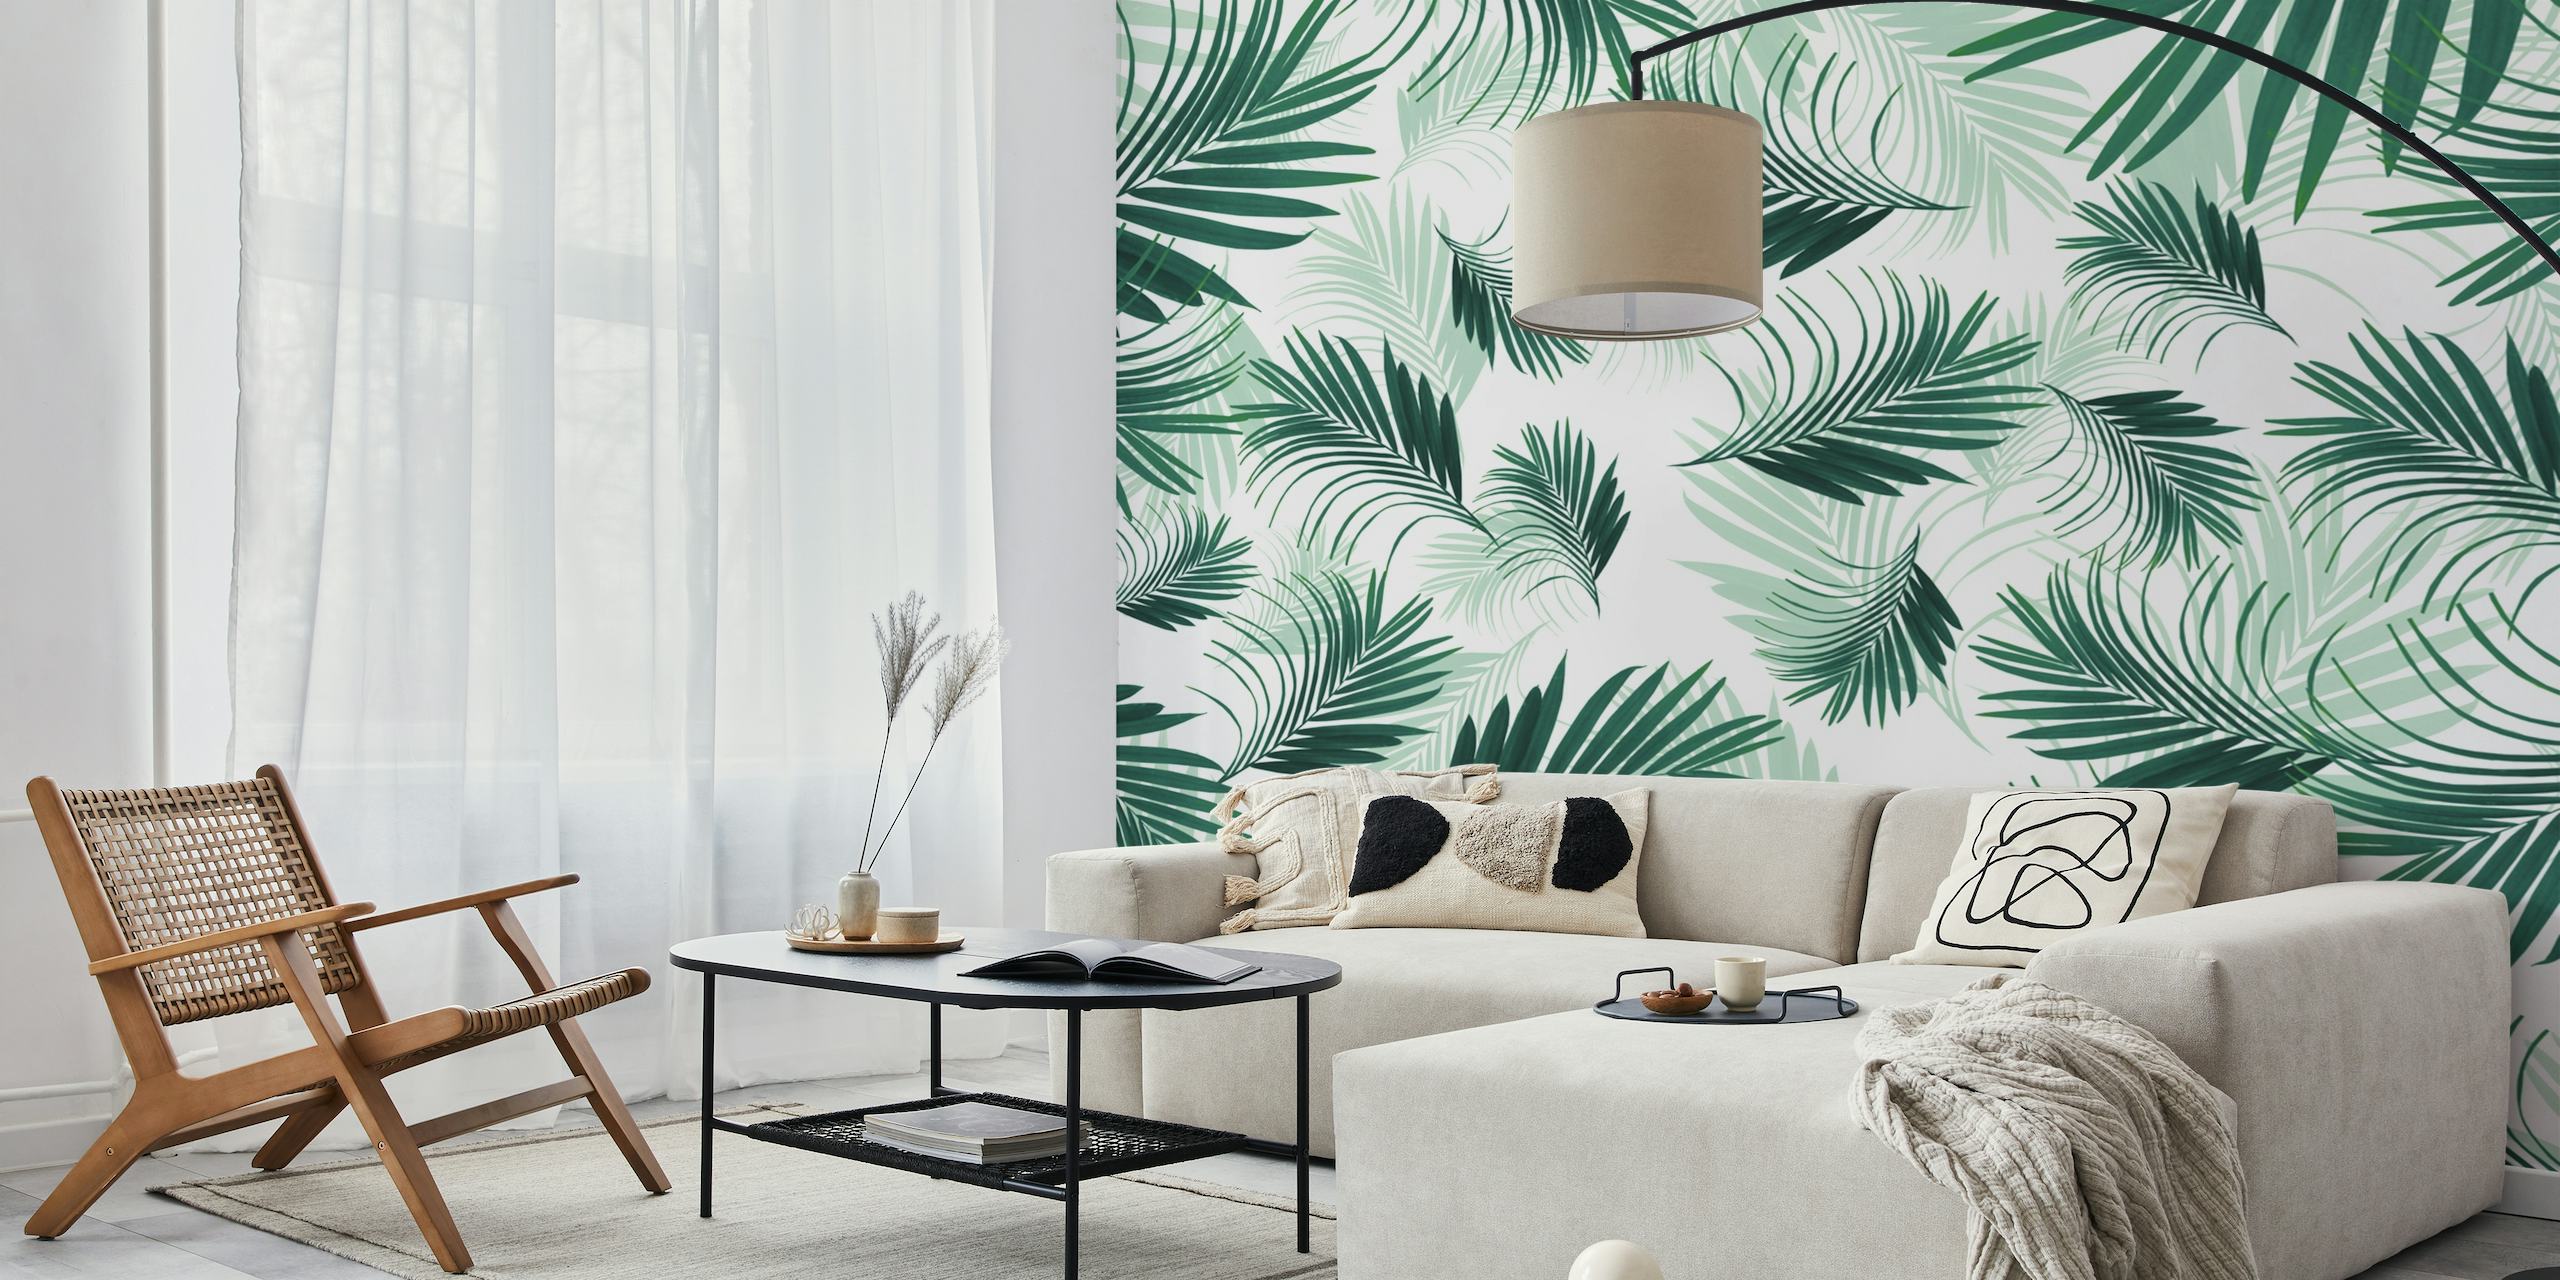 Mural de parede vibrante com palmeiras verdes tropicais para uma decoração inspirada na natureza